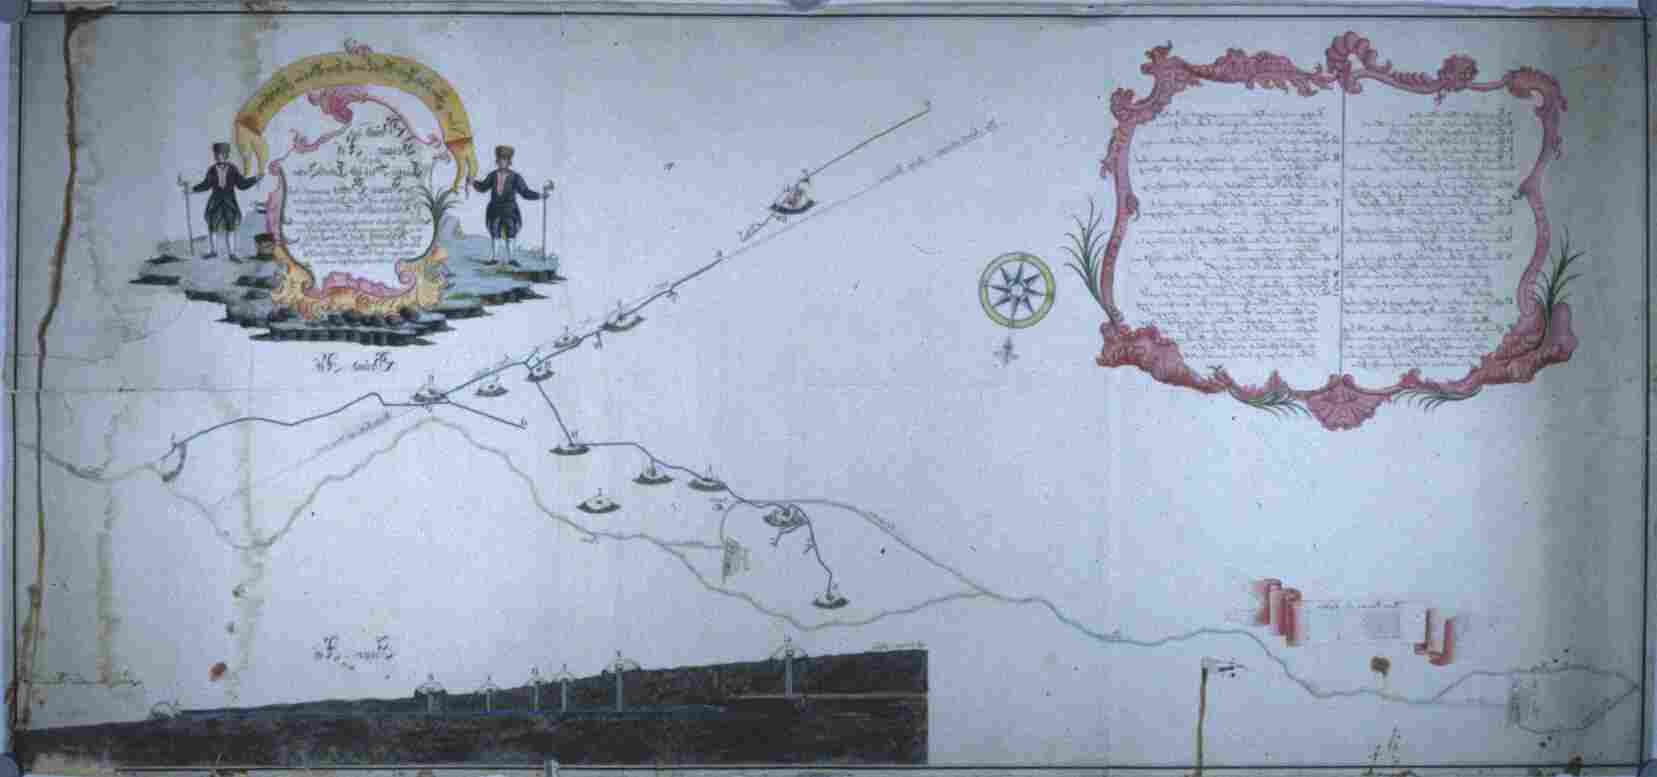 Grubenplan von 1782